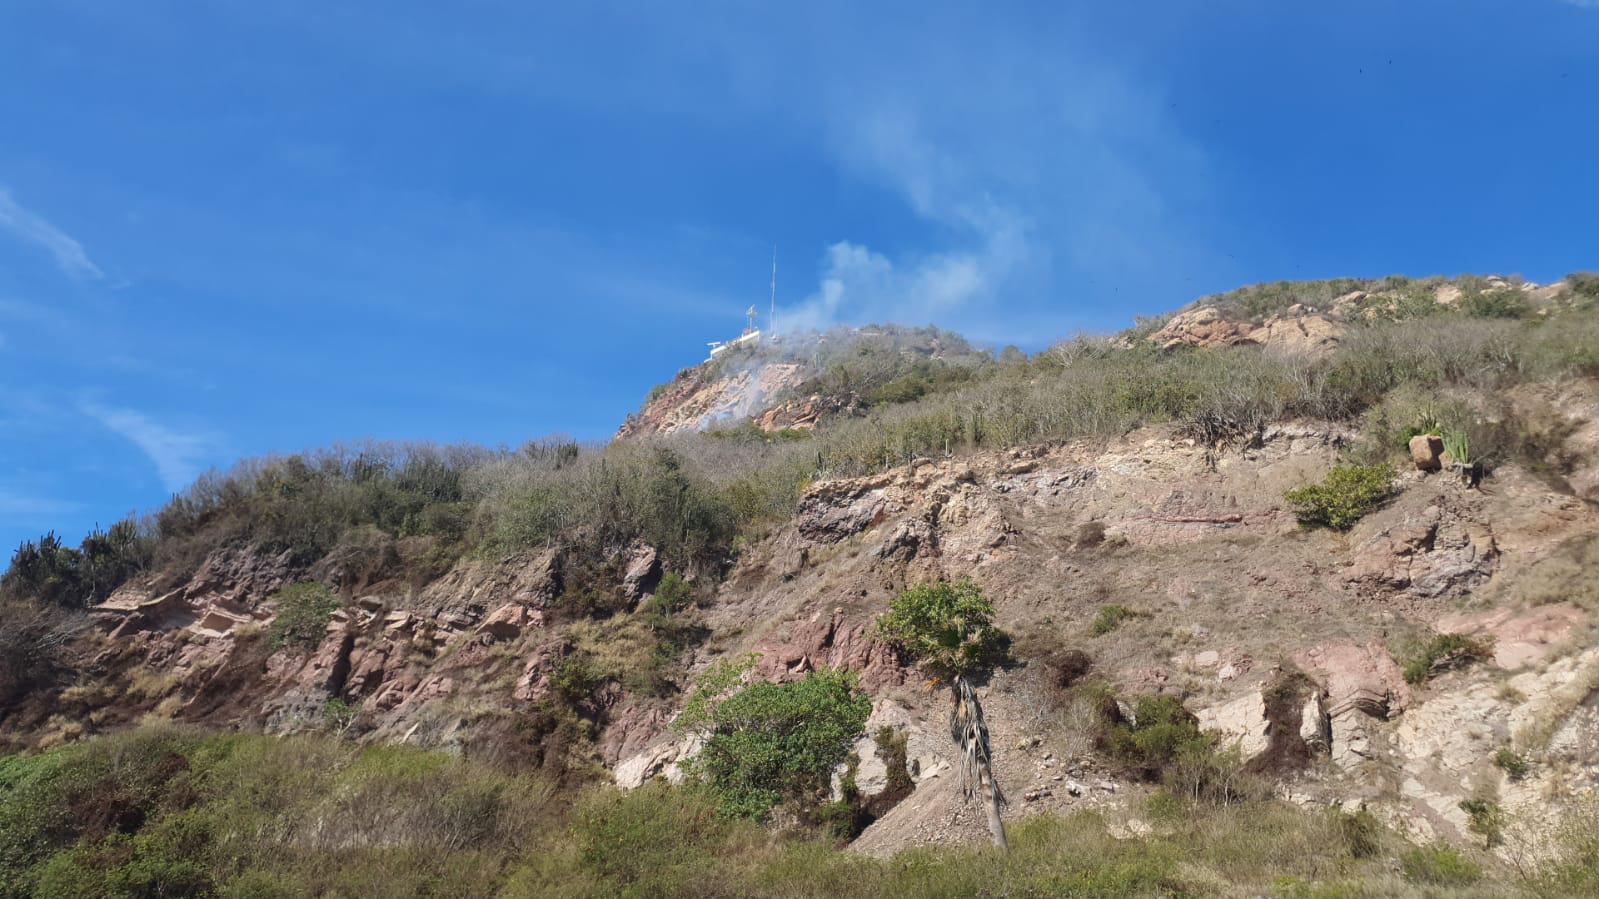 $!Moviliza a Protección Civil y Bomberos incendio en la cima del cerro del Crestón en Mazatlán